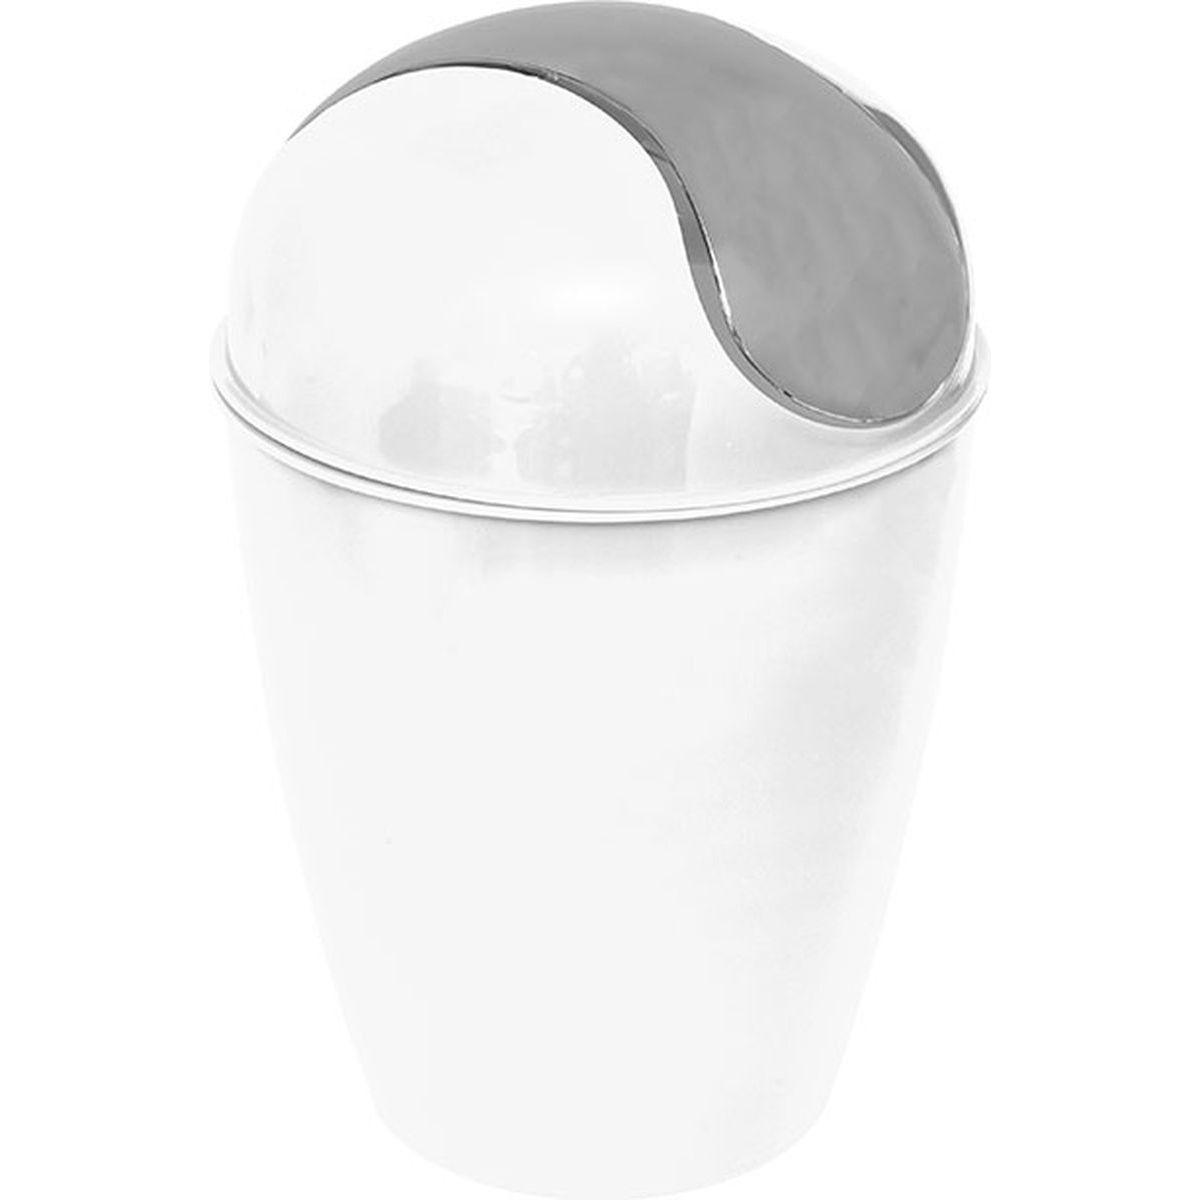 Mini-poubelle conique à couvercle basculant - ø 13 x H 19 cm - Différents formats - Blanc, gris